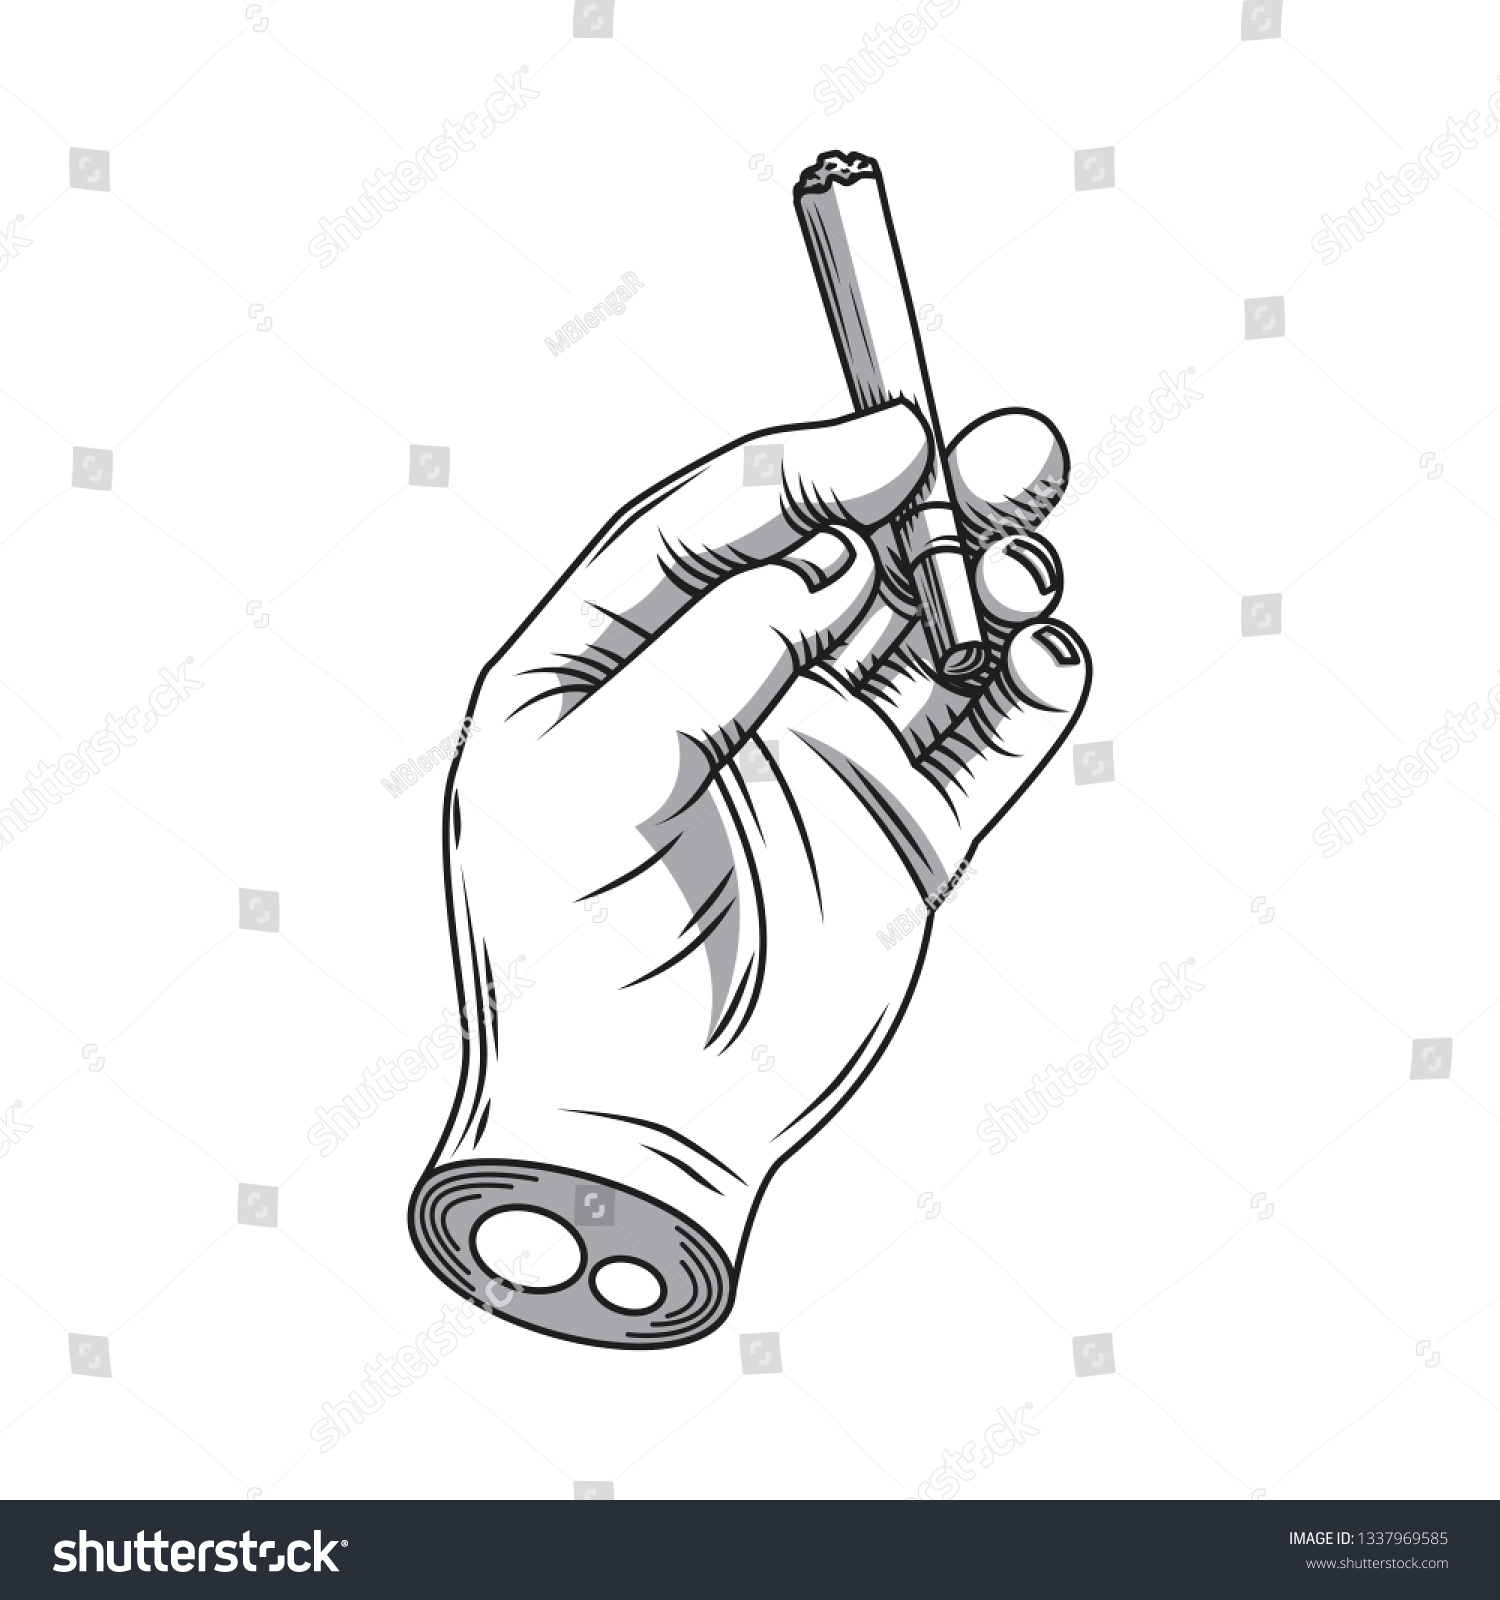 Рисование рук с сигаретой